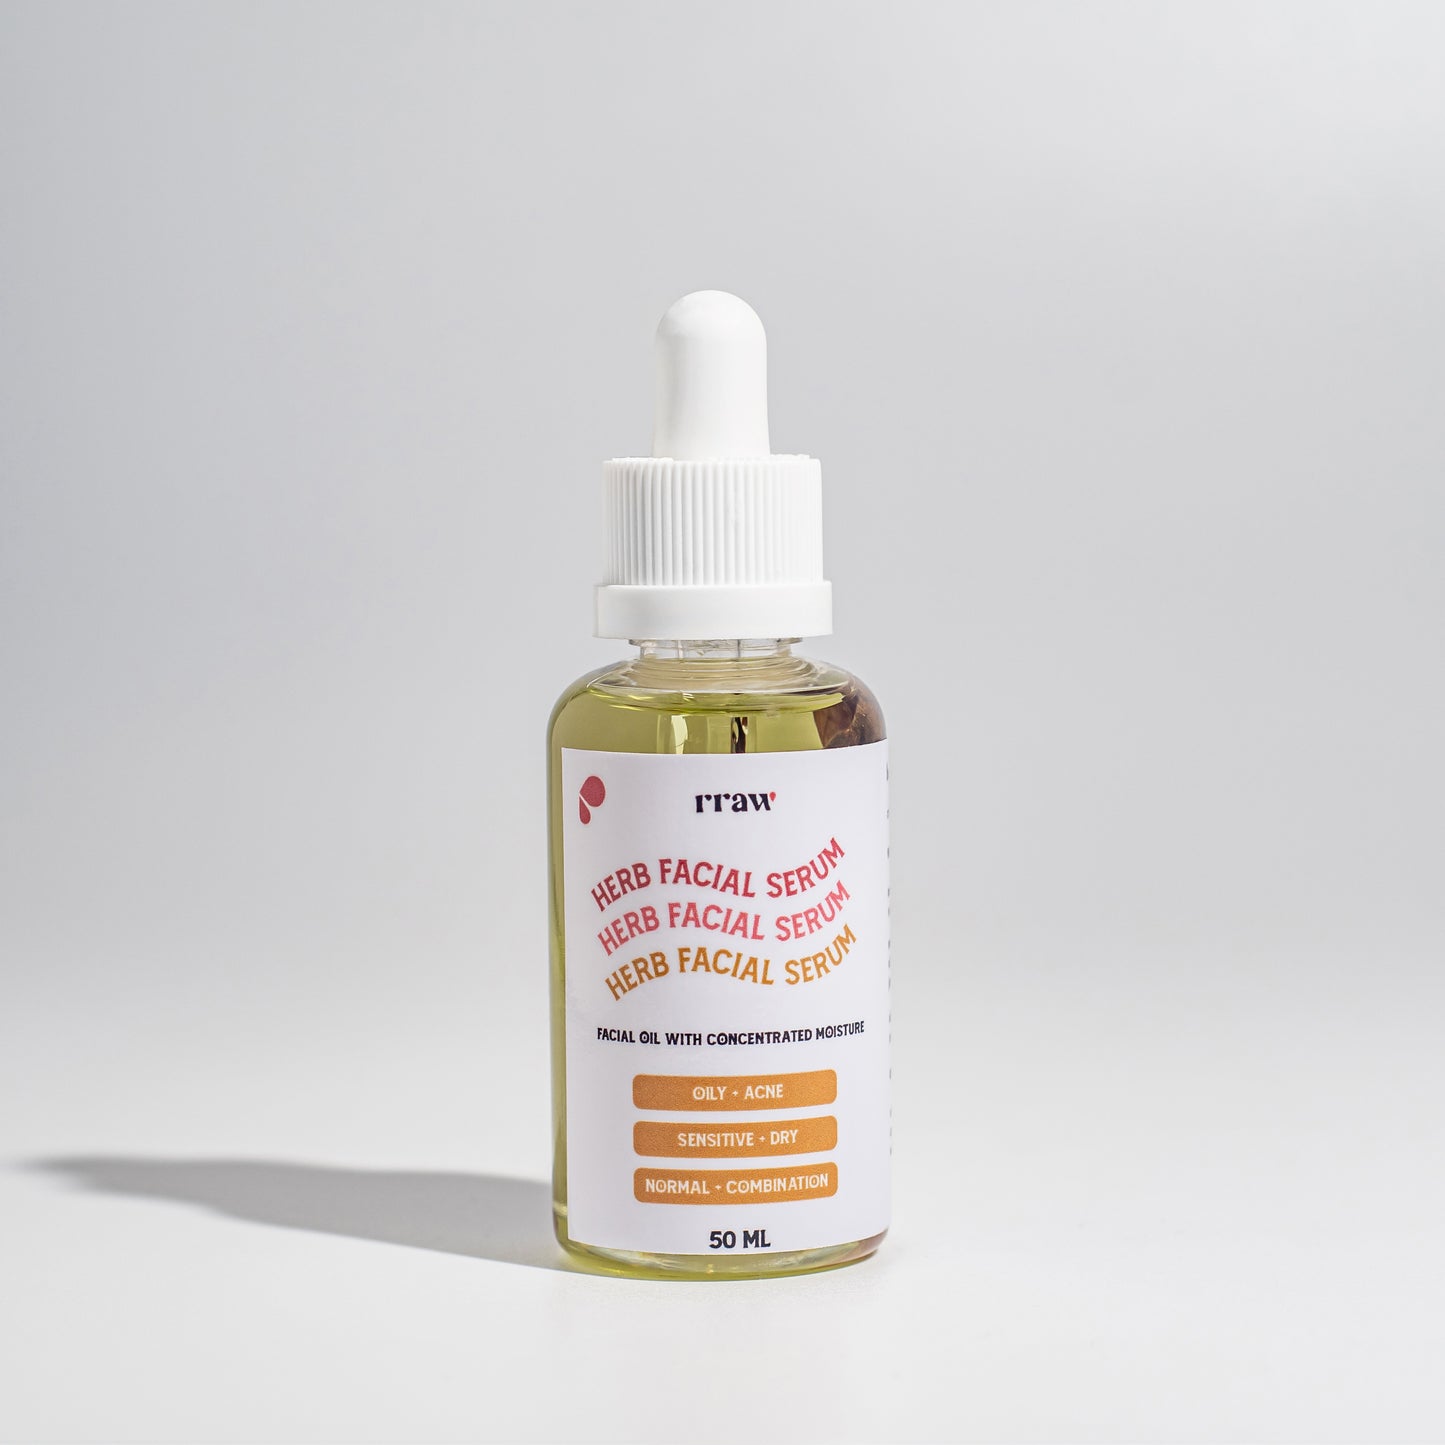 Sensitive / Dry Herb Facial Serum